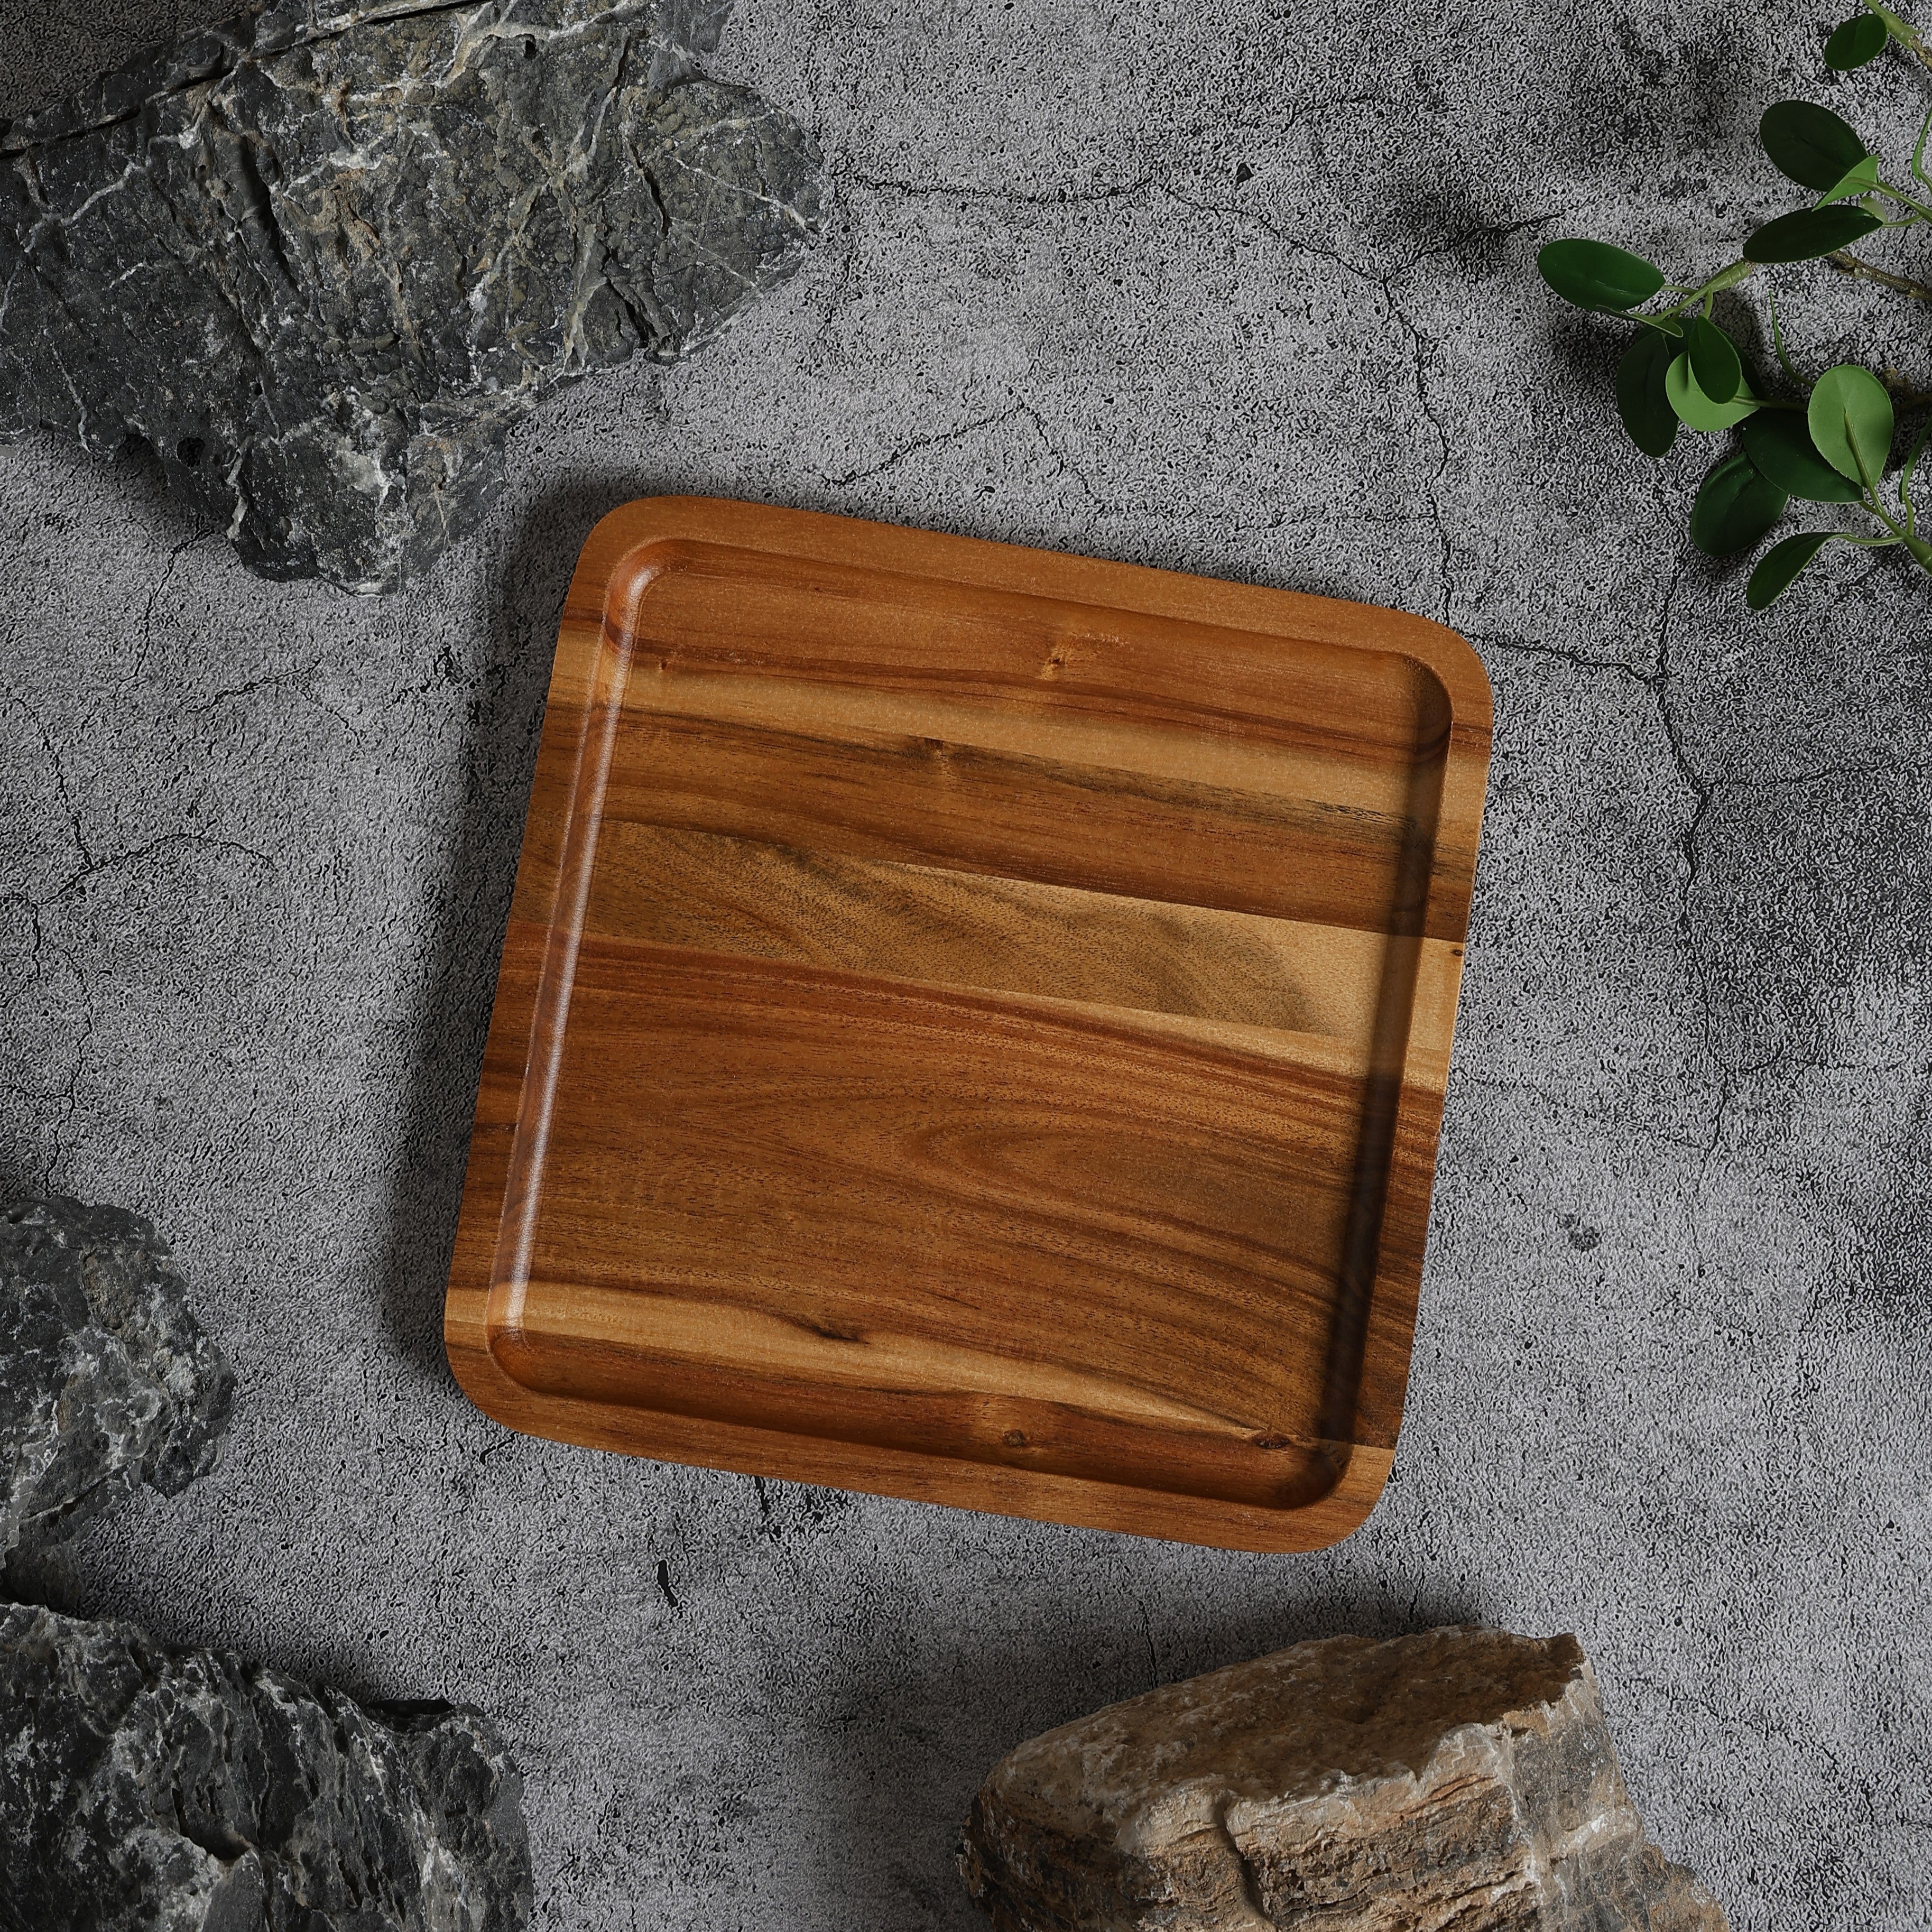 SHIBUMI 8 Inch Wooden Square Plate | Acacia Plate